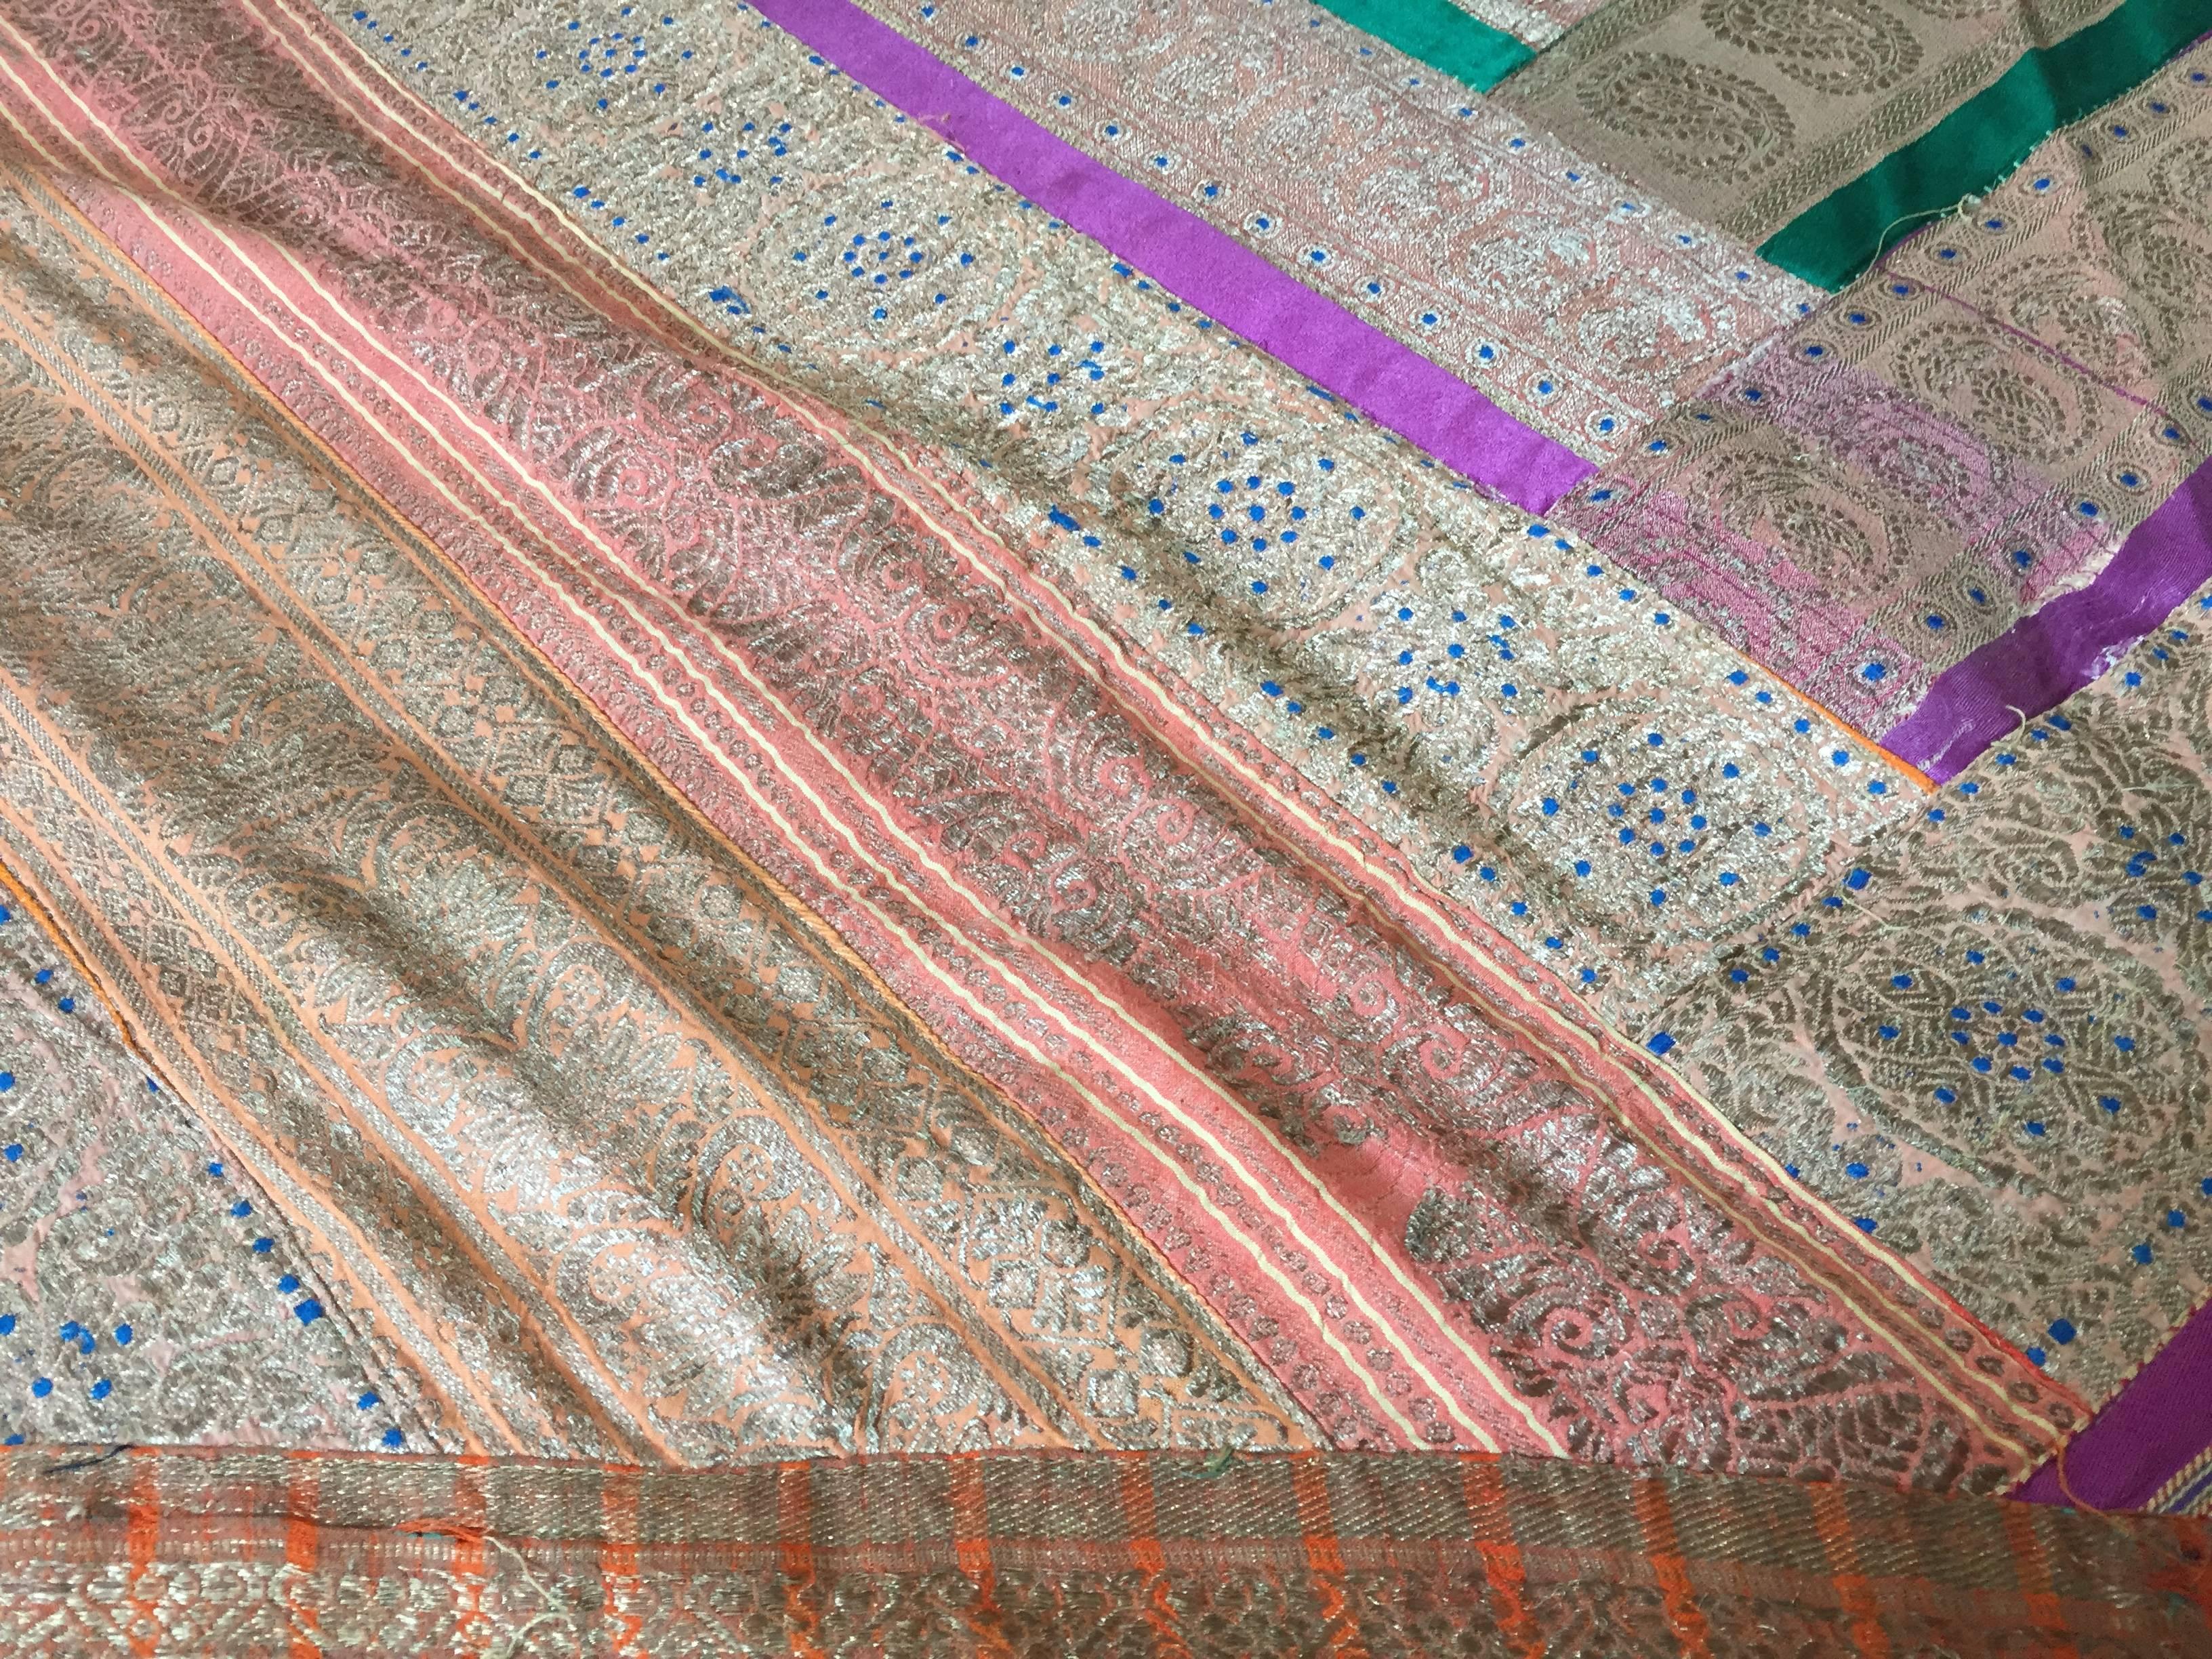 Seiden-Saire-Wandteppich-Patchwork aus maurischer Seide.
Handgefertigte Steppdecke aus antiken indischen Saris-Bordüren im Vintage-Stil.
Streifenstreifen Seidenstücke in mehrfarbigen, leuchtenden Farben mit goldfarben gestreiften Quadraten aus